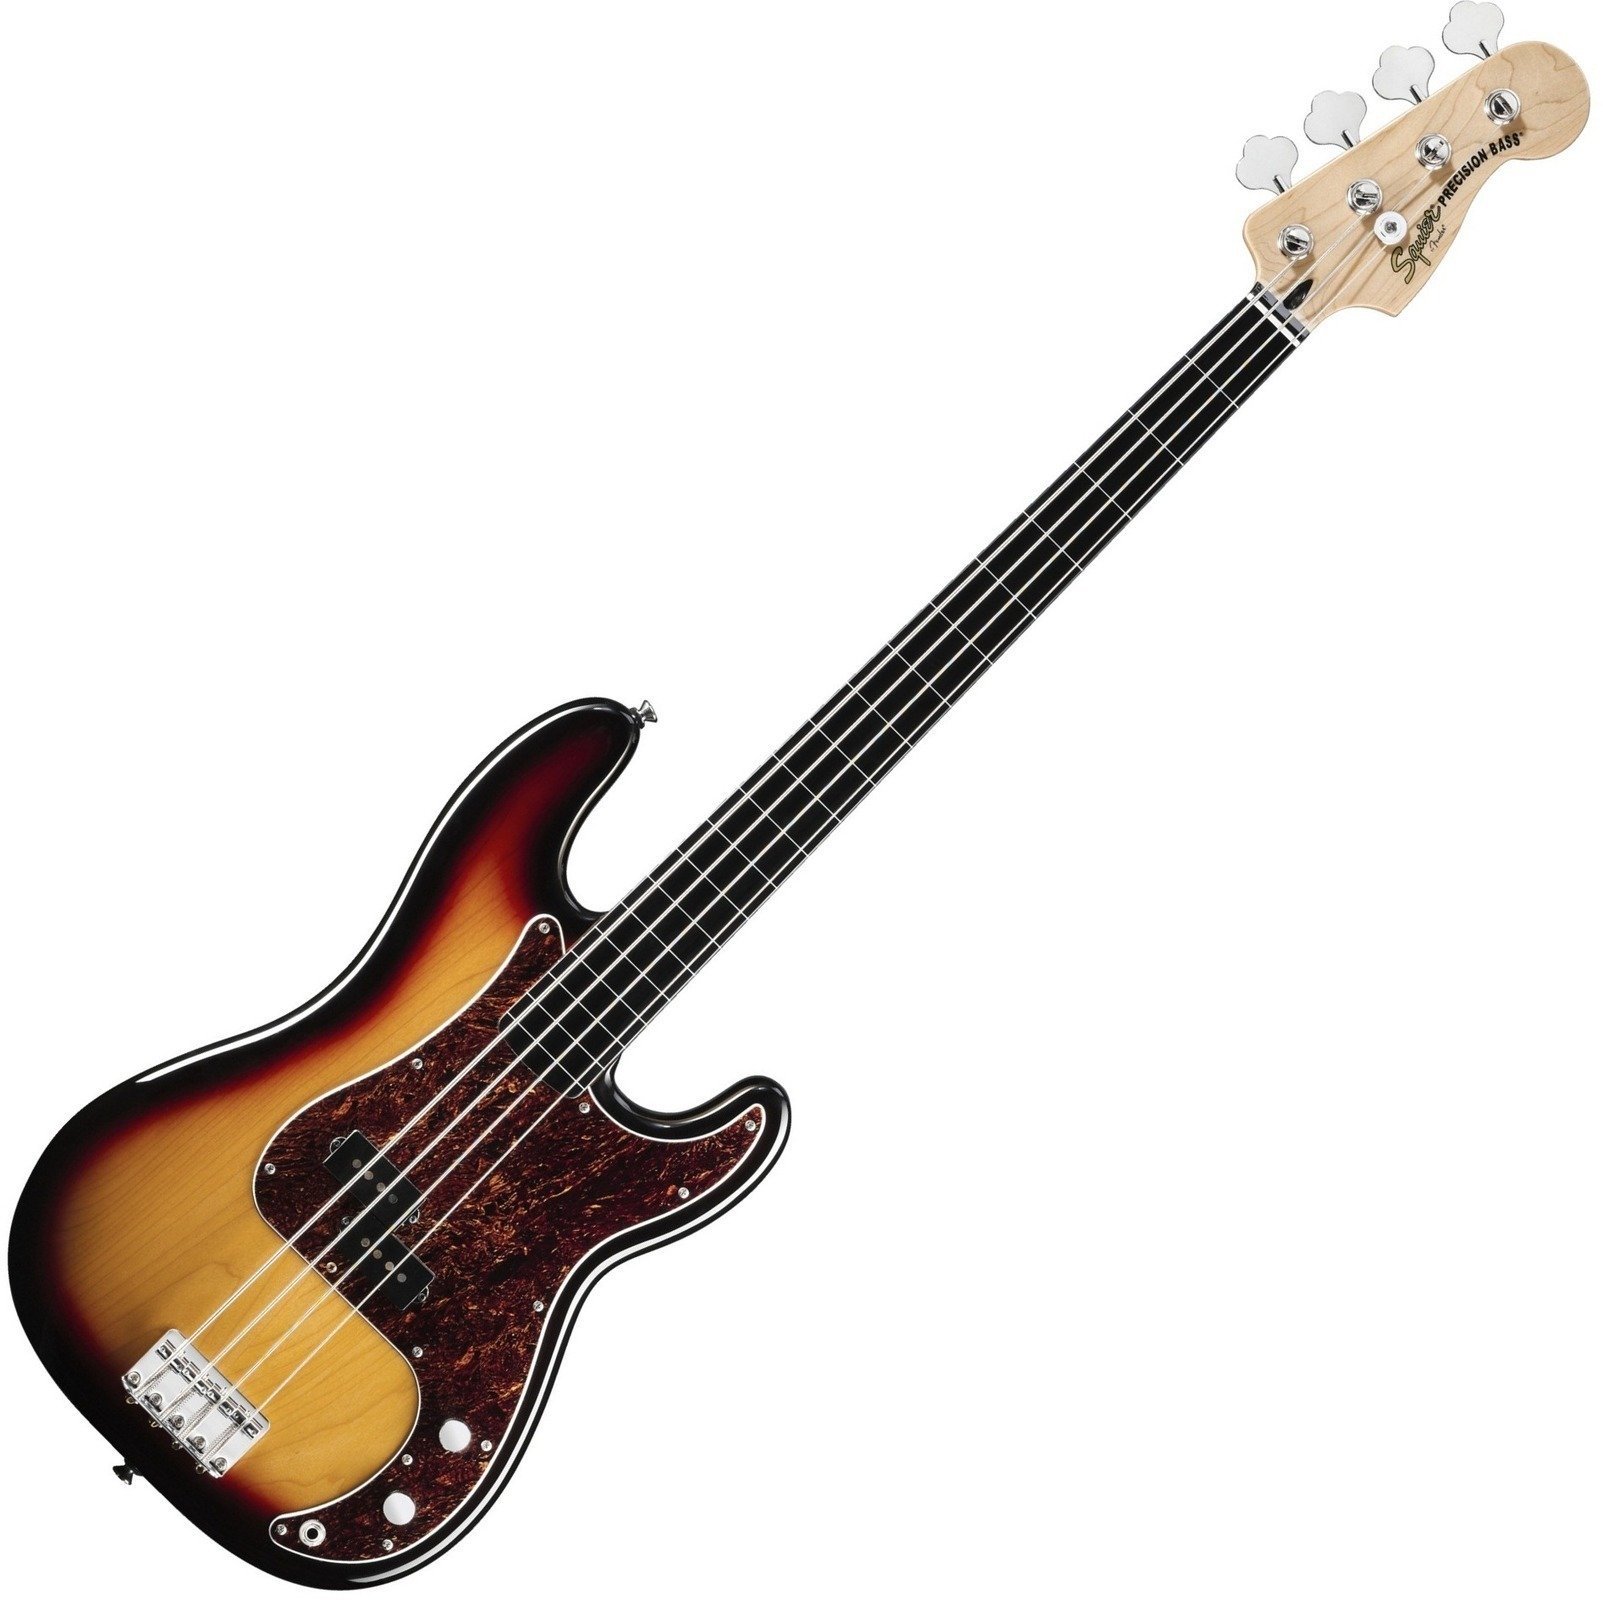 Basse Fretless Fender Squier Vintage Modified Precision Bass Fretless 3 Color Sunburst